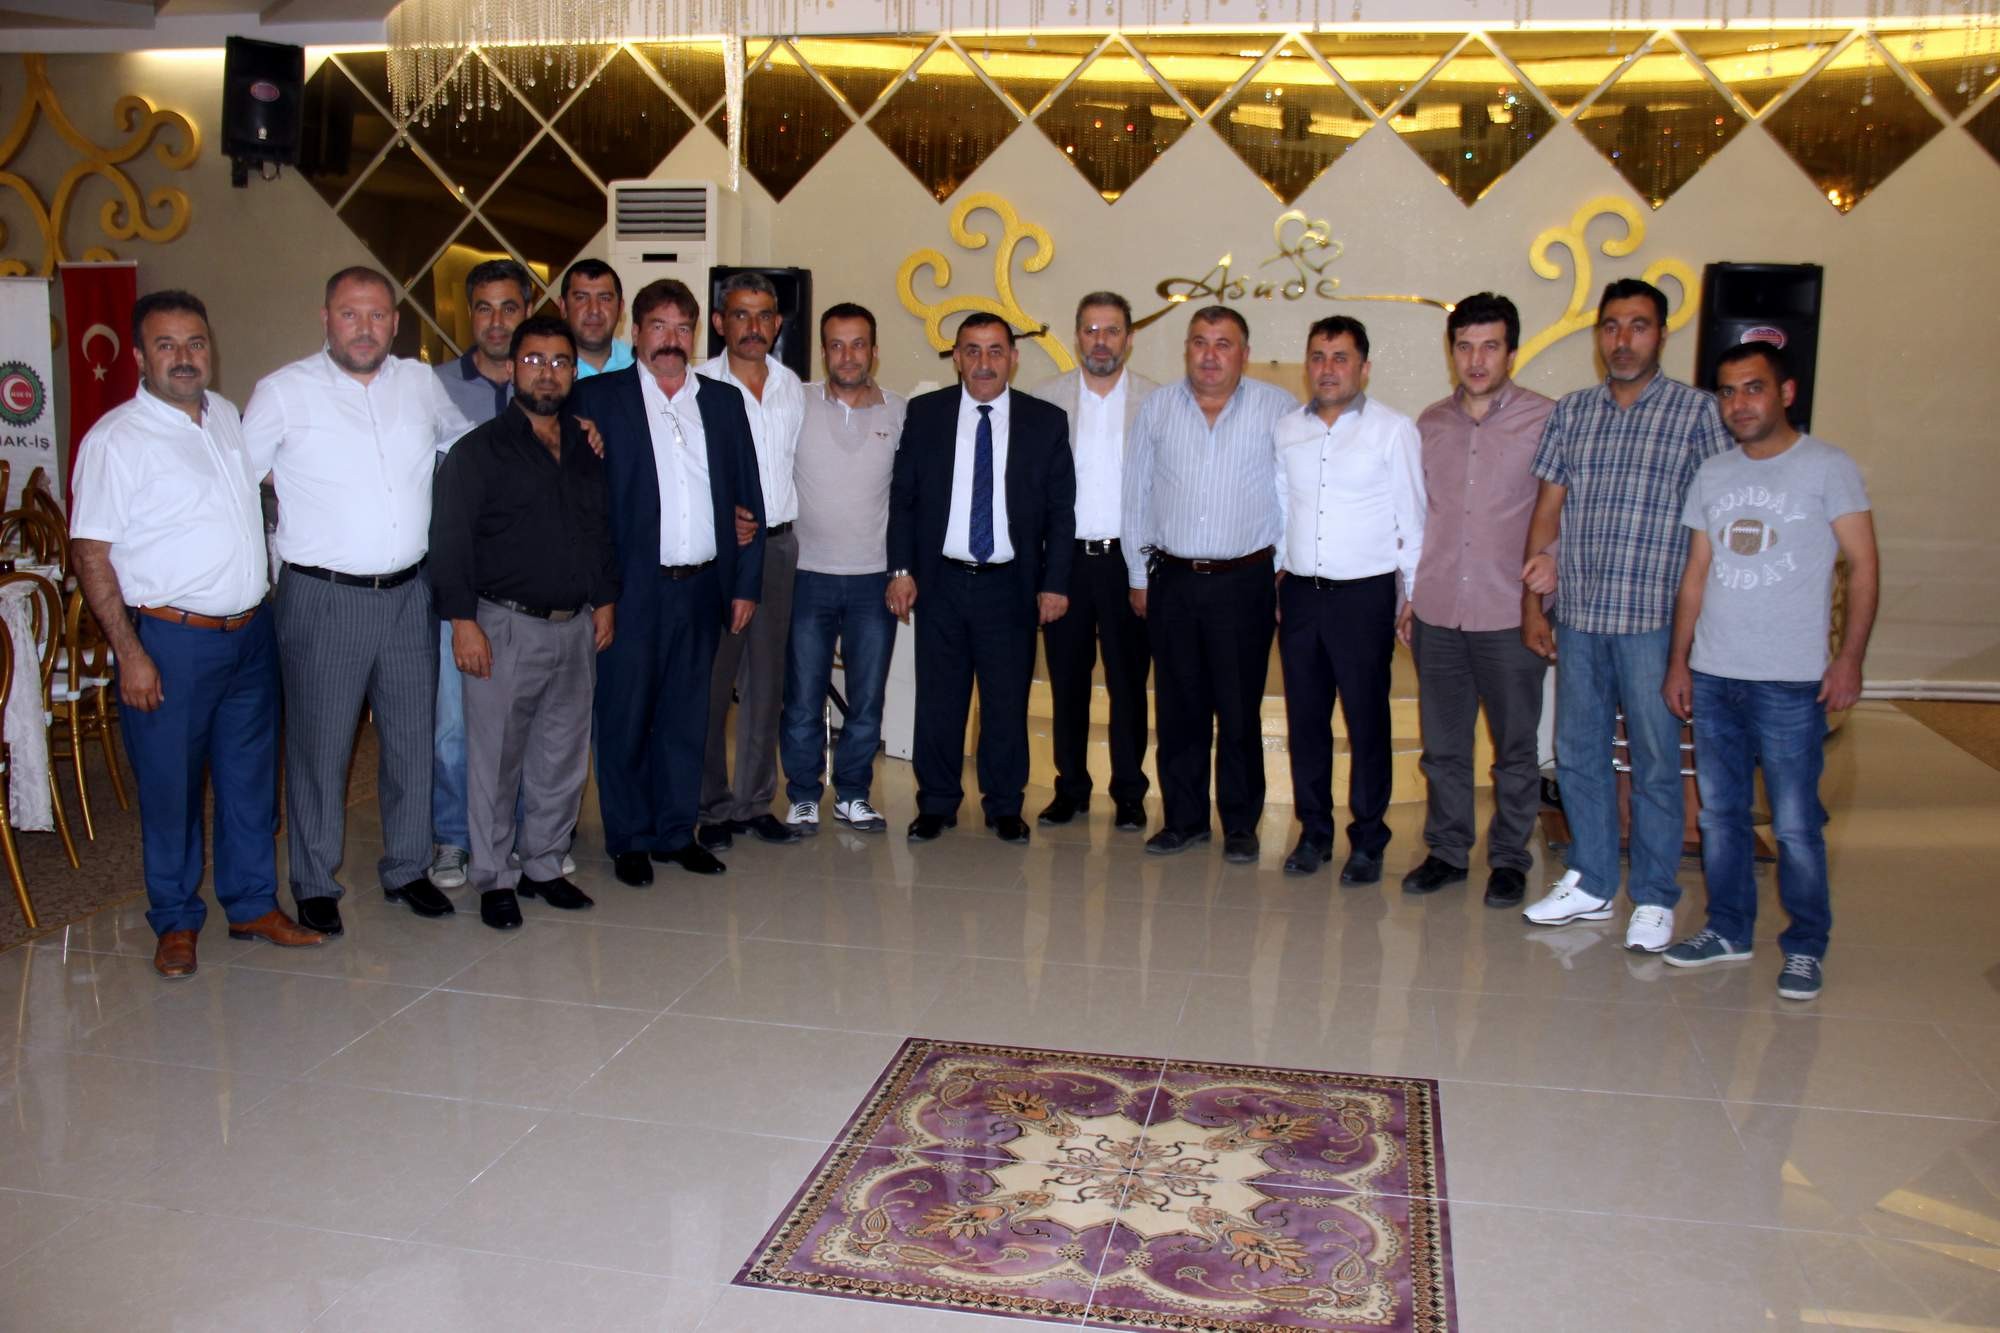 Öz Taşıma İş Sendikası Genel Başkanı Mustafa Toruntay: “Kayseri’de daha büyük bir aile olma hedefimiz var”